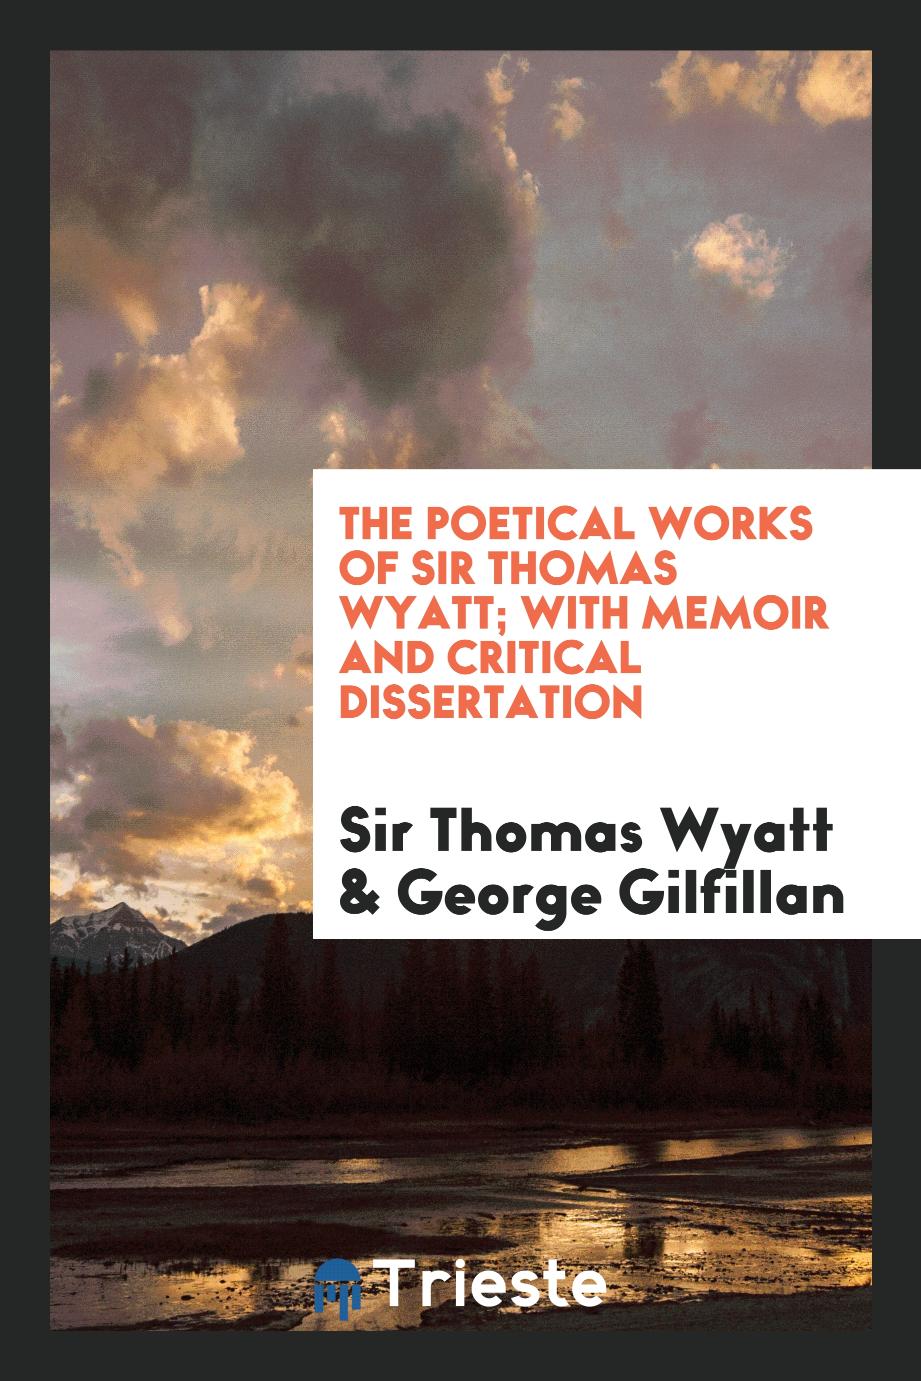 Sir Thomas Wyatt, George Gilfillan - The poetical works of Sir Thomas Wyatt; with memoir and critical dissertation